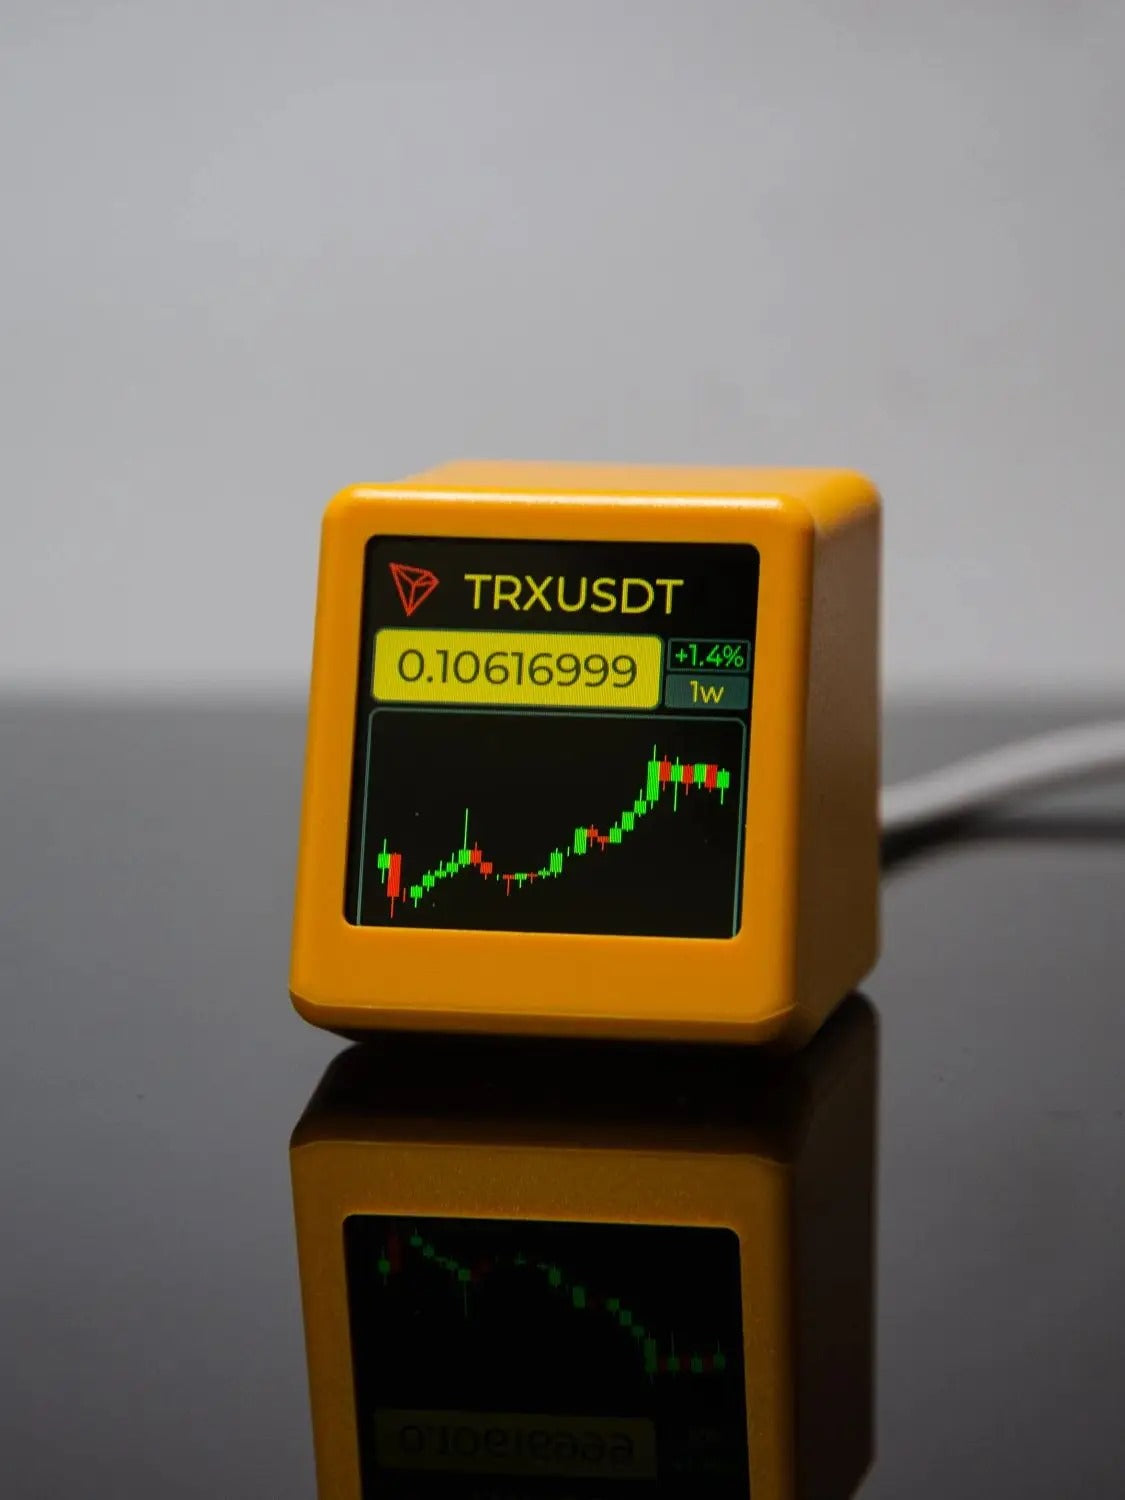 Bitcoin™ – Tracker